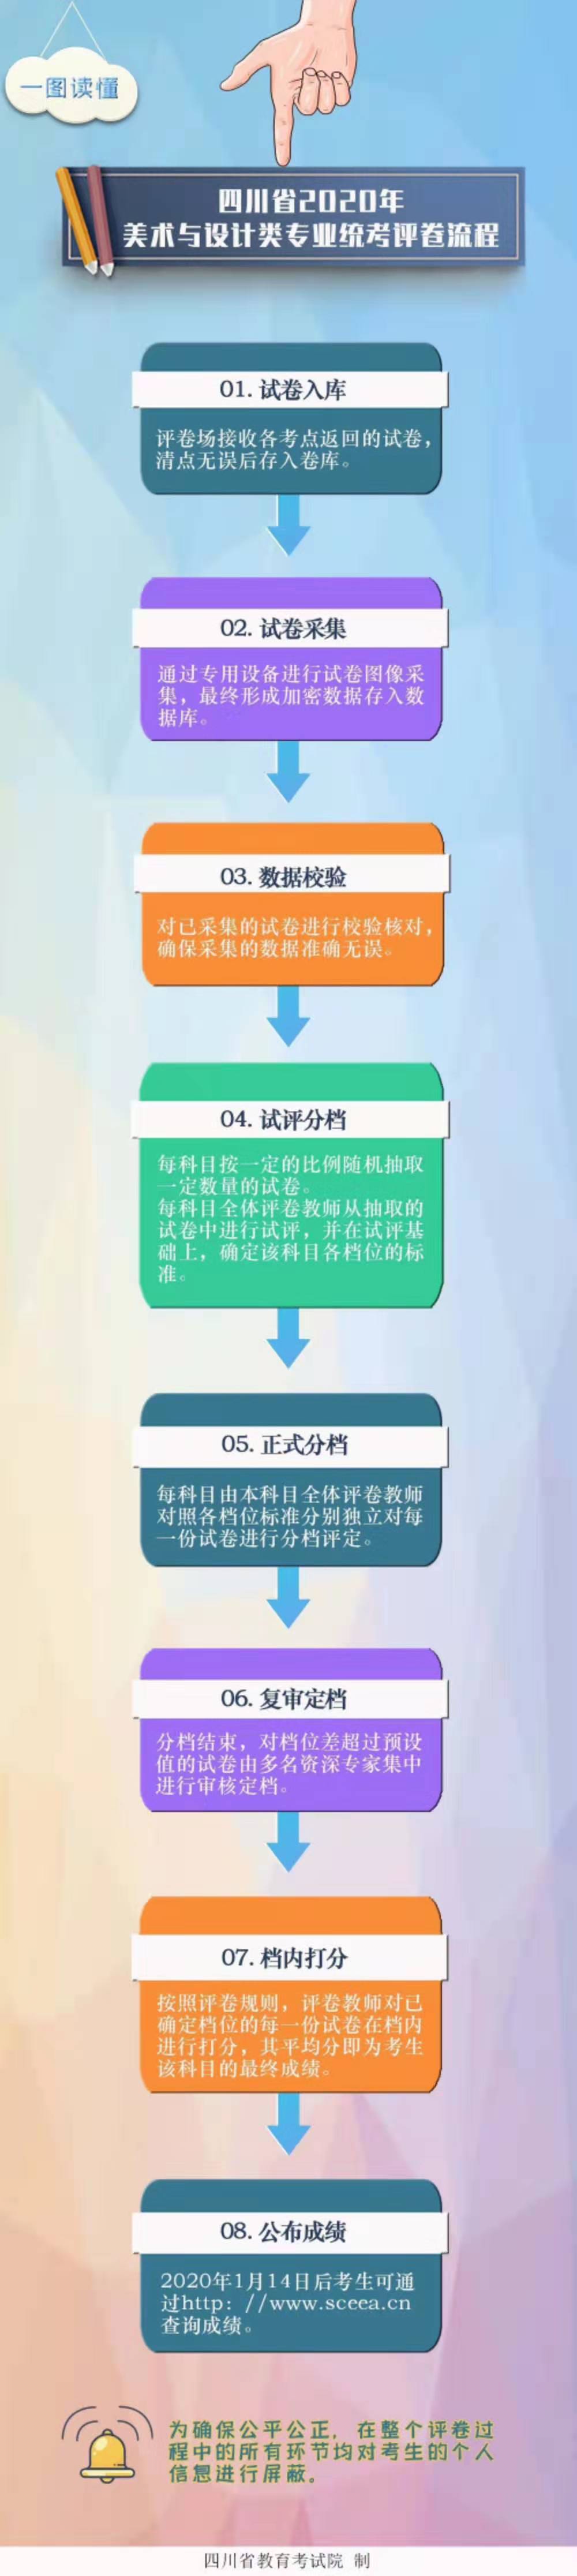 四川省20200年美术与设计统考阅卷流程